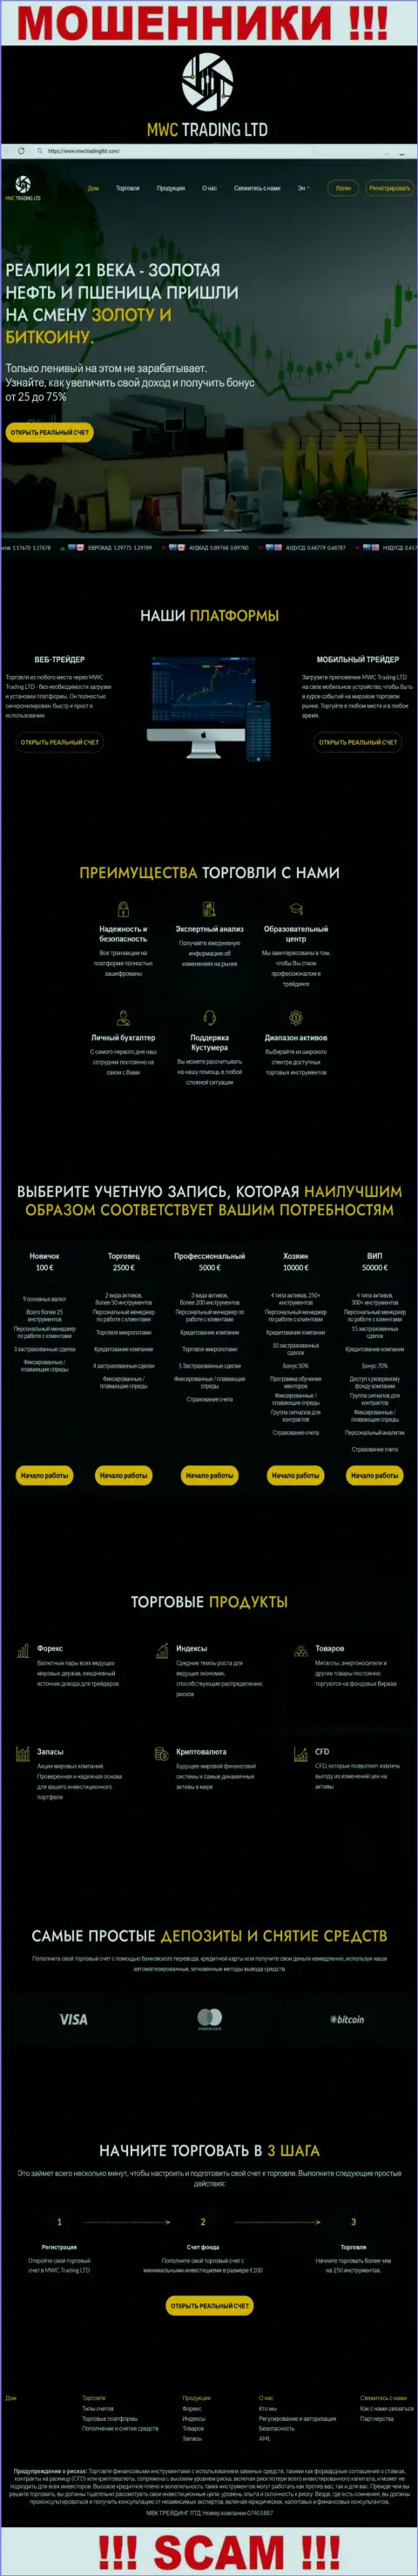 Скрин официального сайта жульнической компании МВКТрейдингЛтд Ком